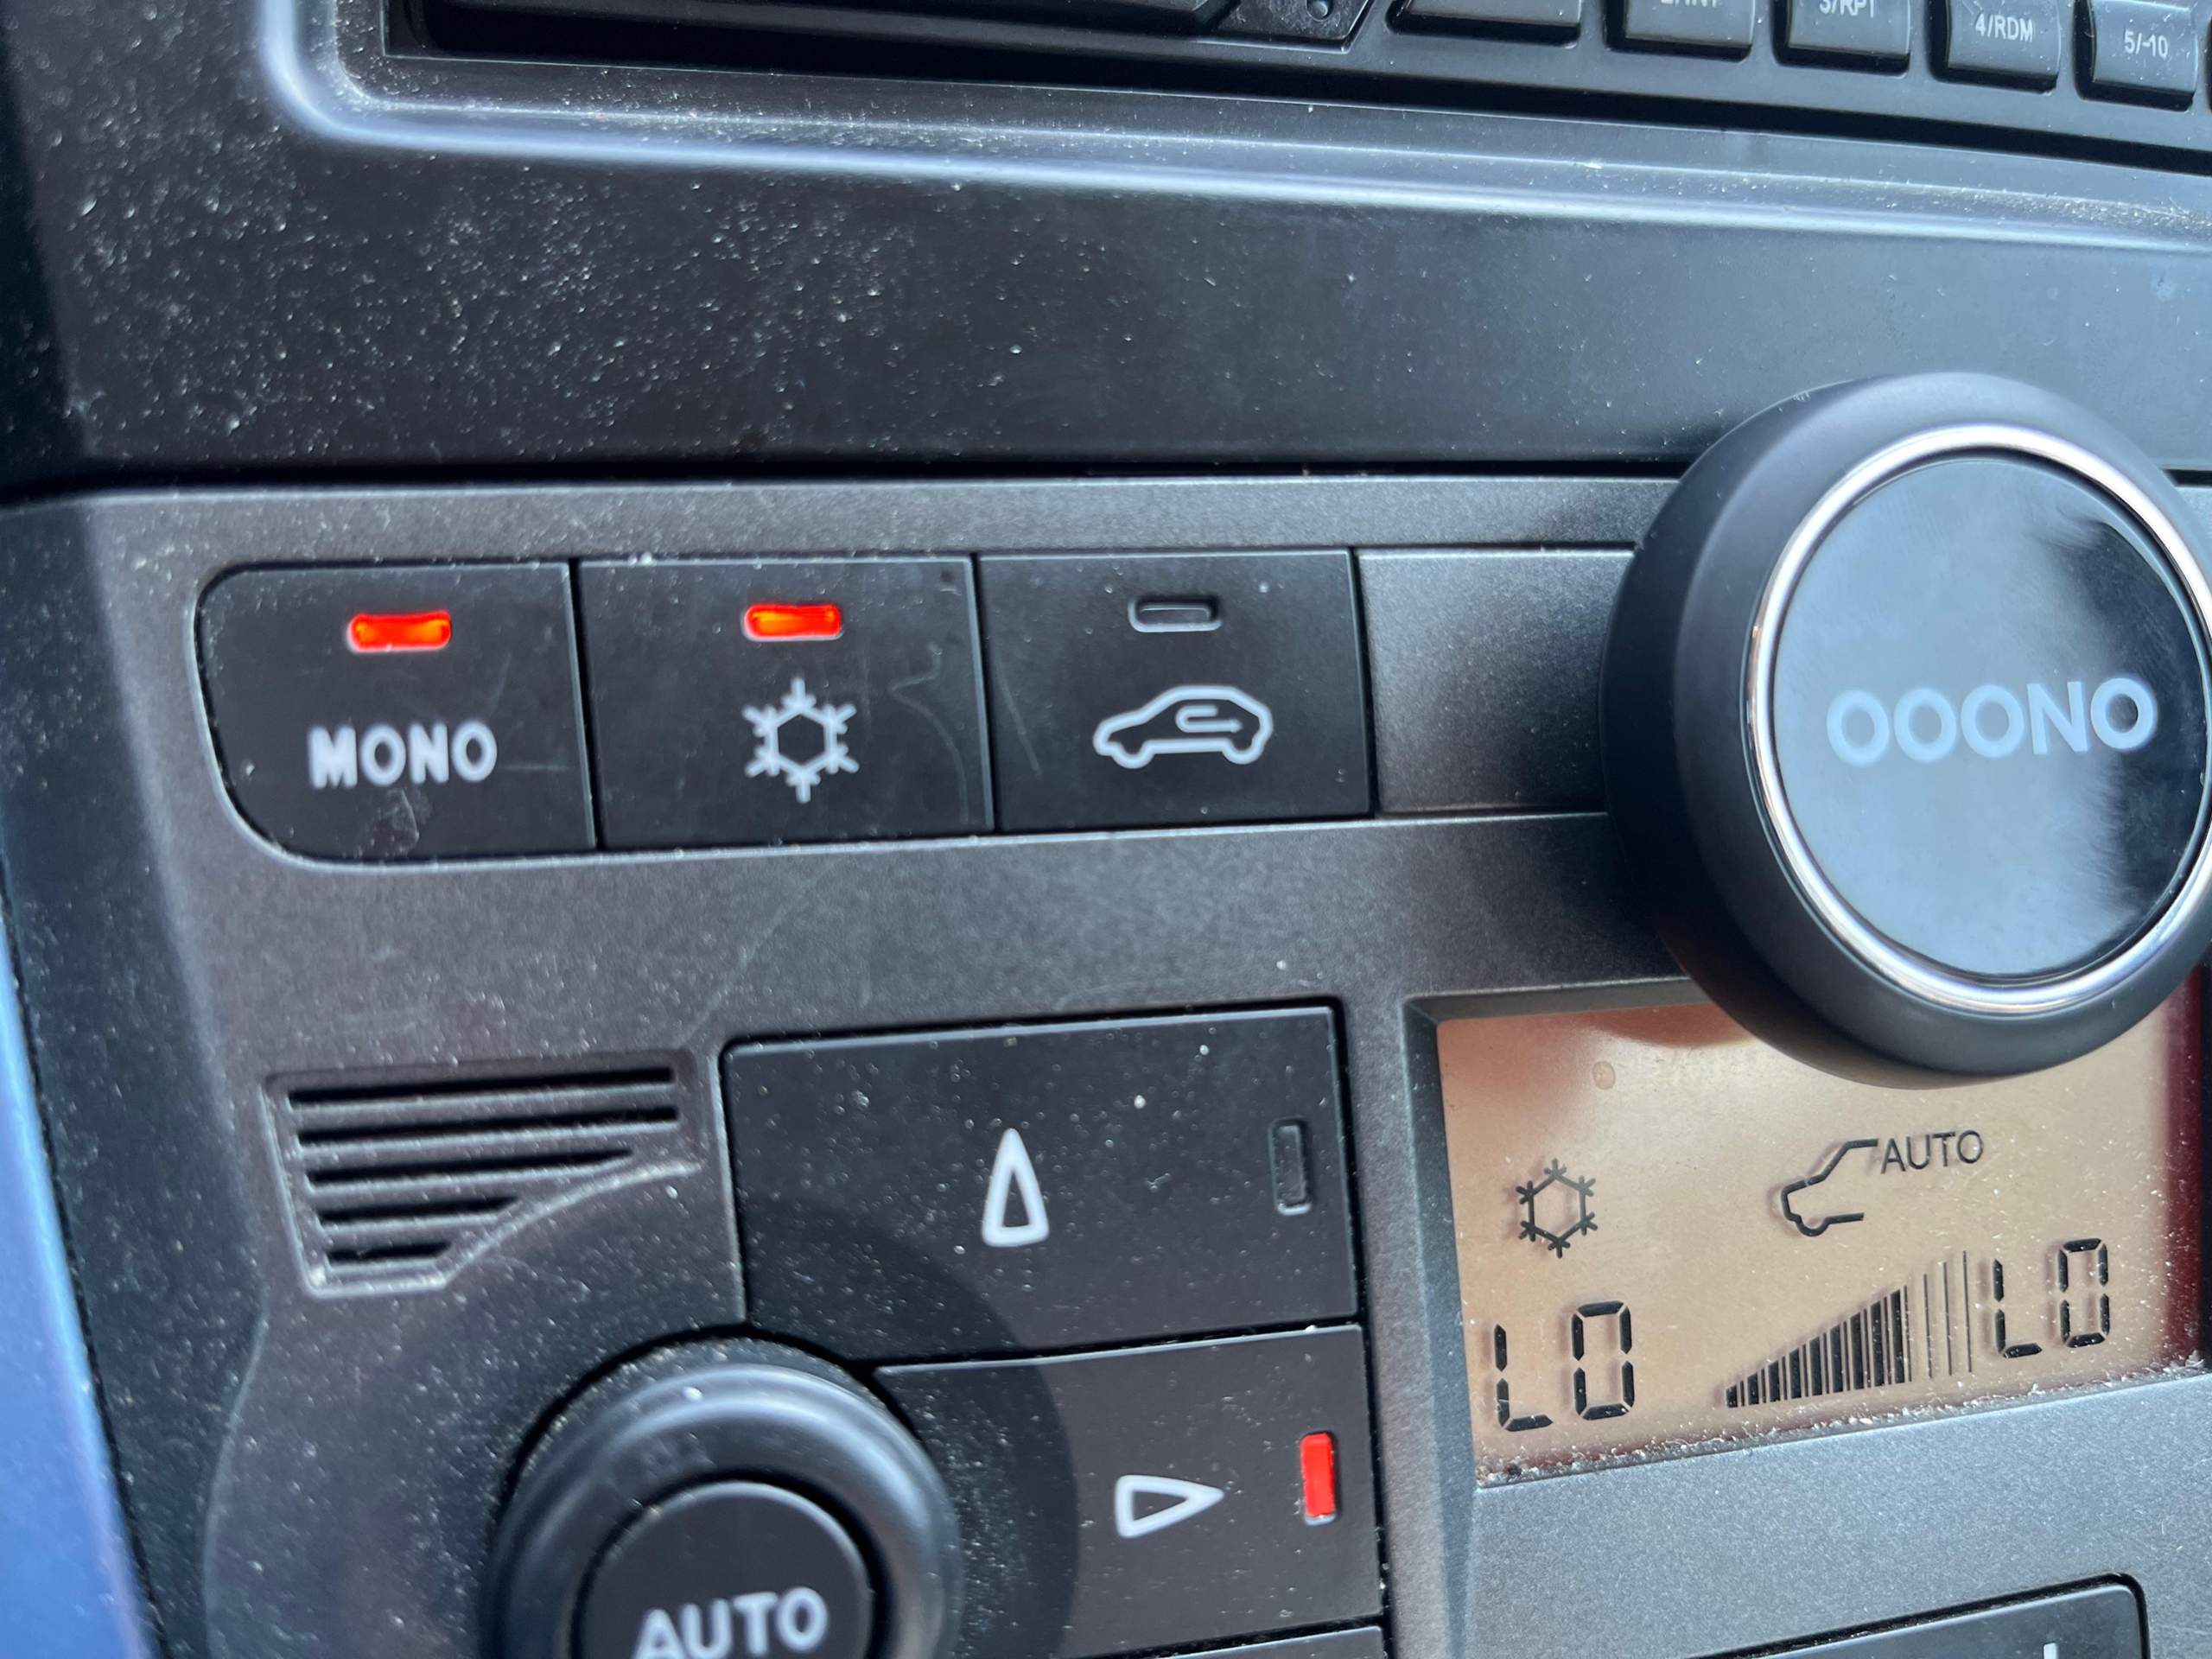 Auto Klimaanlage: Muss ich dieses Teil neben dem Knopf wo ein Schnee  abzubilden ist auch einschalten? (Autofahren)